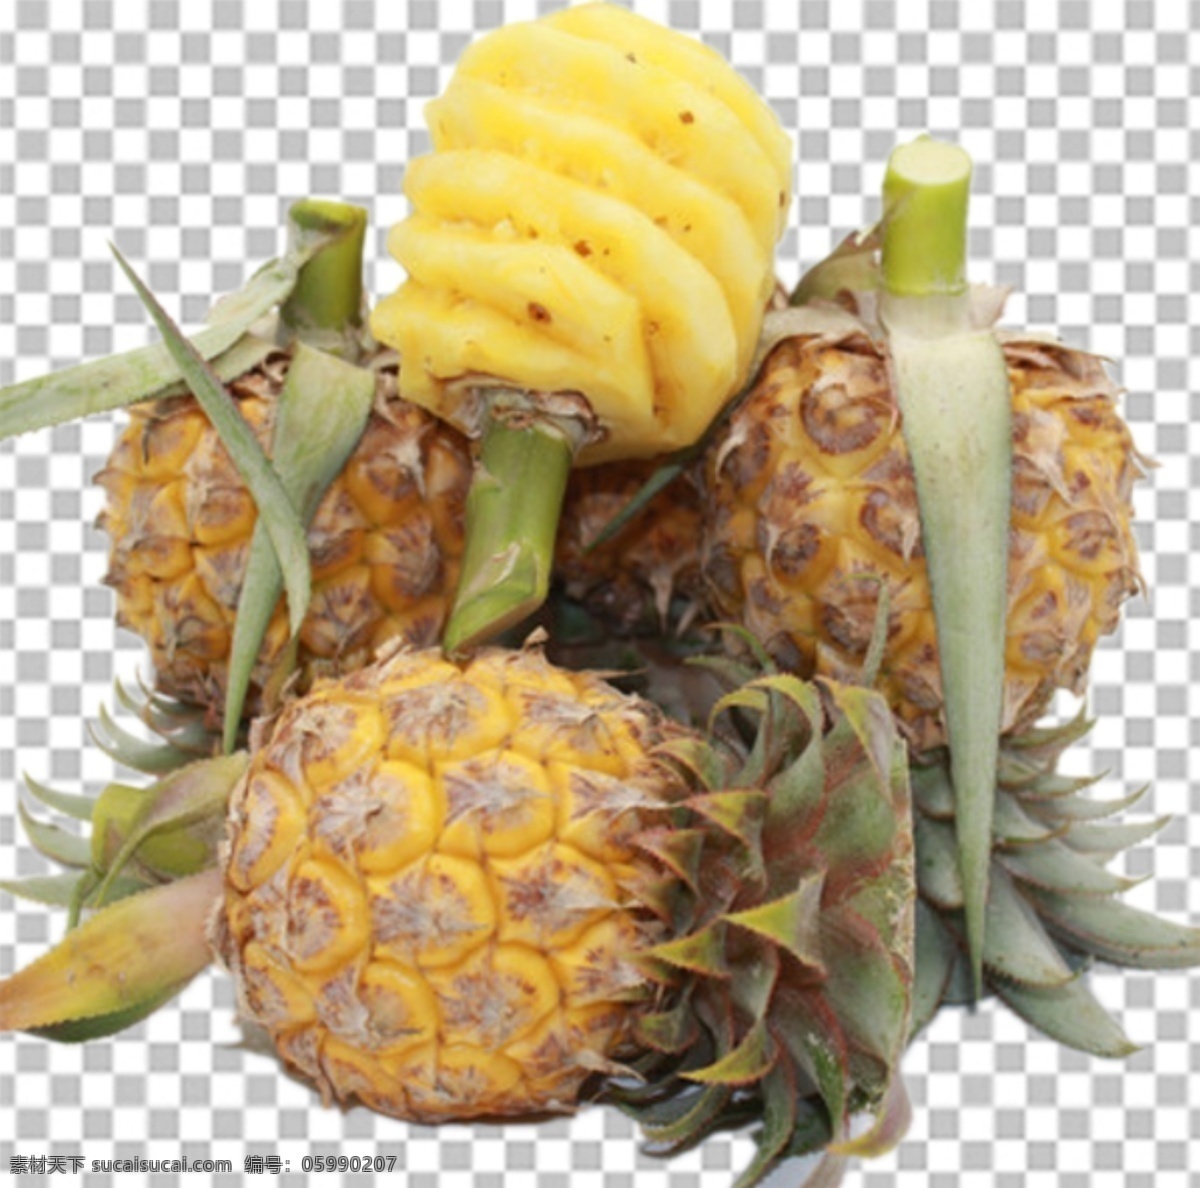 菠萝图片 菠萝 水果特写 水果写真 透明底水果 免抠图 水果 分层图 通道 分层 新鲜 特写 透明背景 透明底 抠图 png图 生物世界 水果透明底